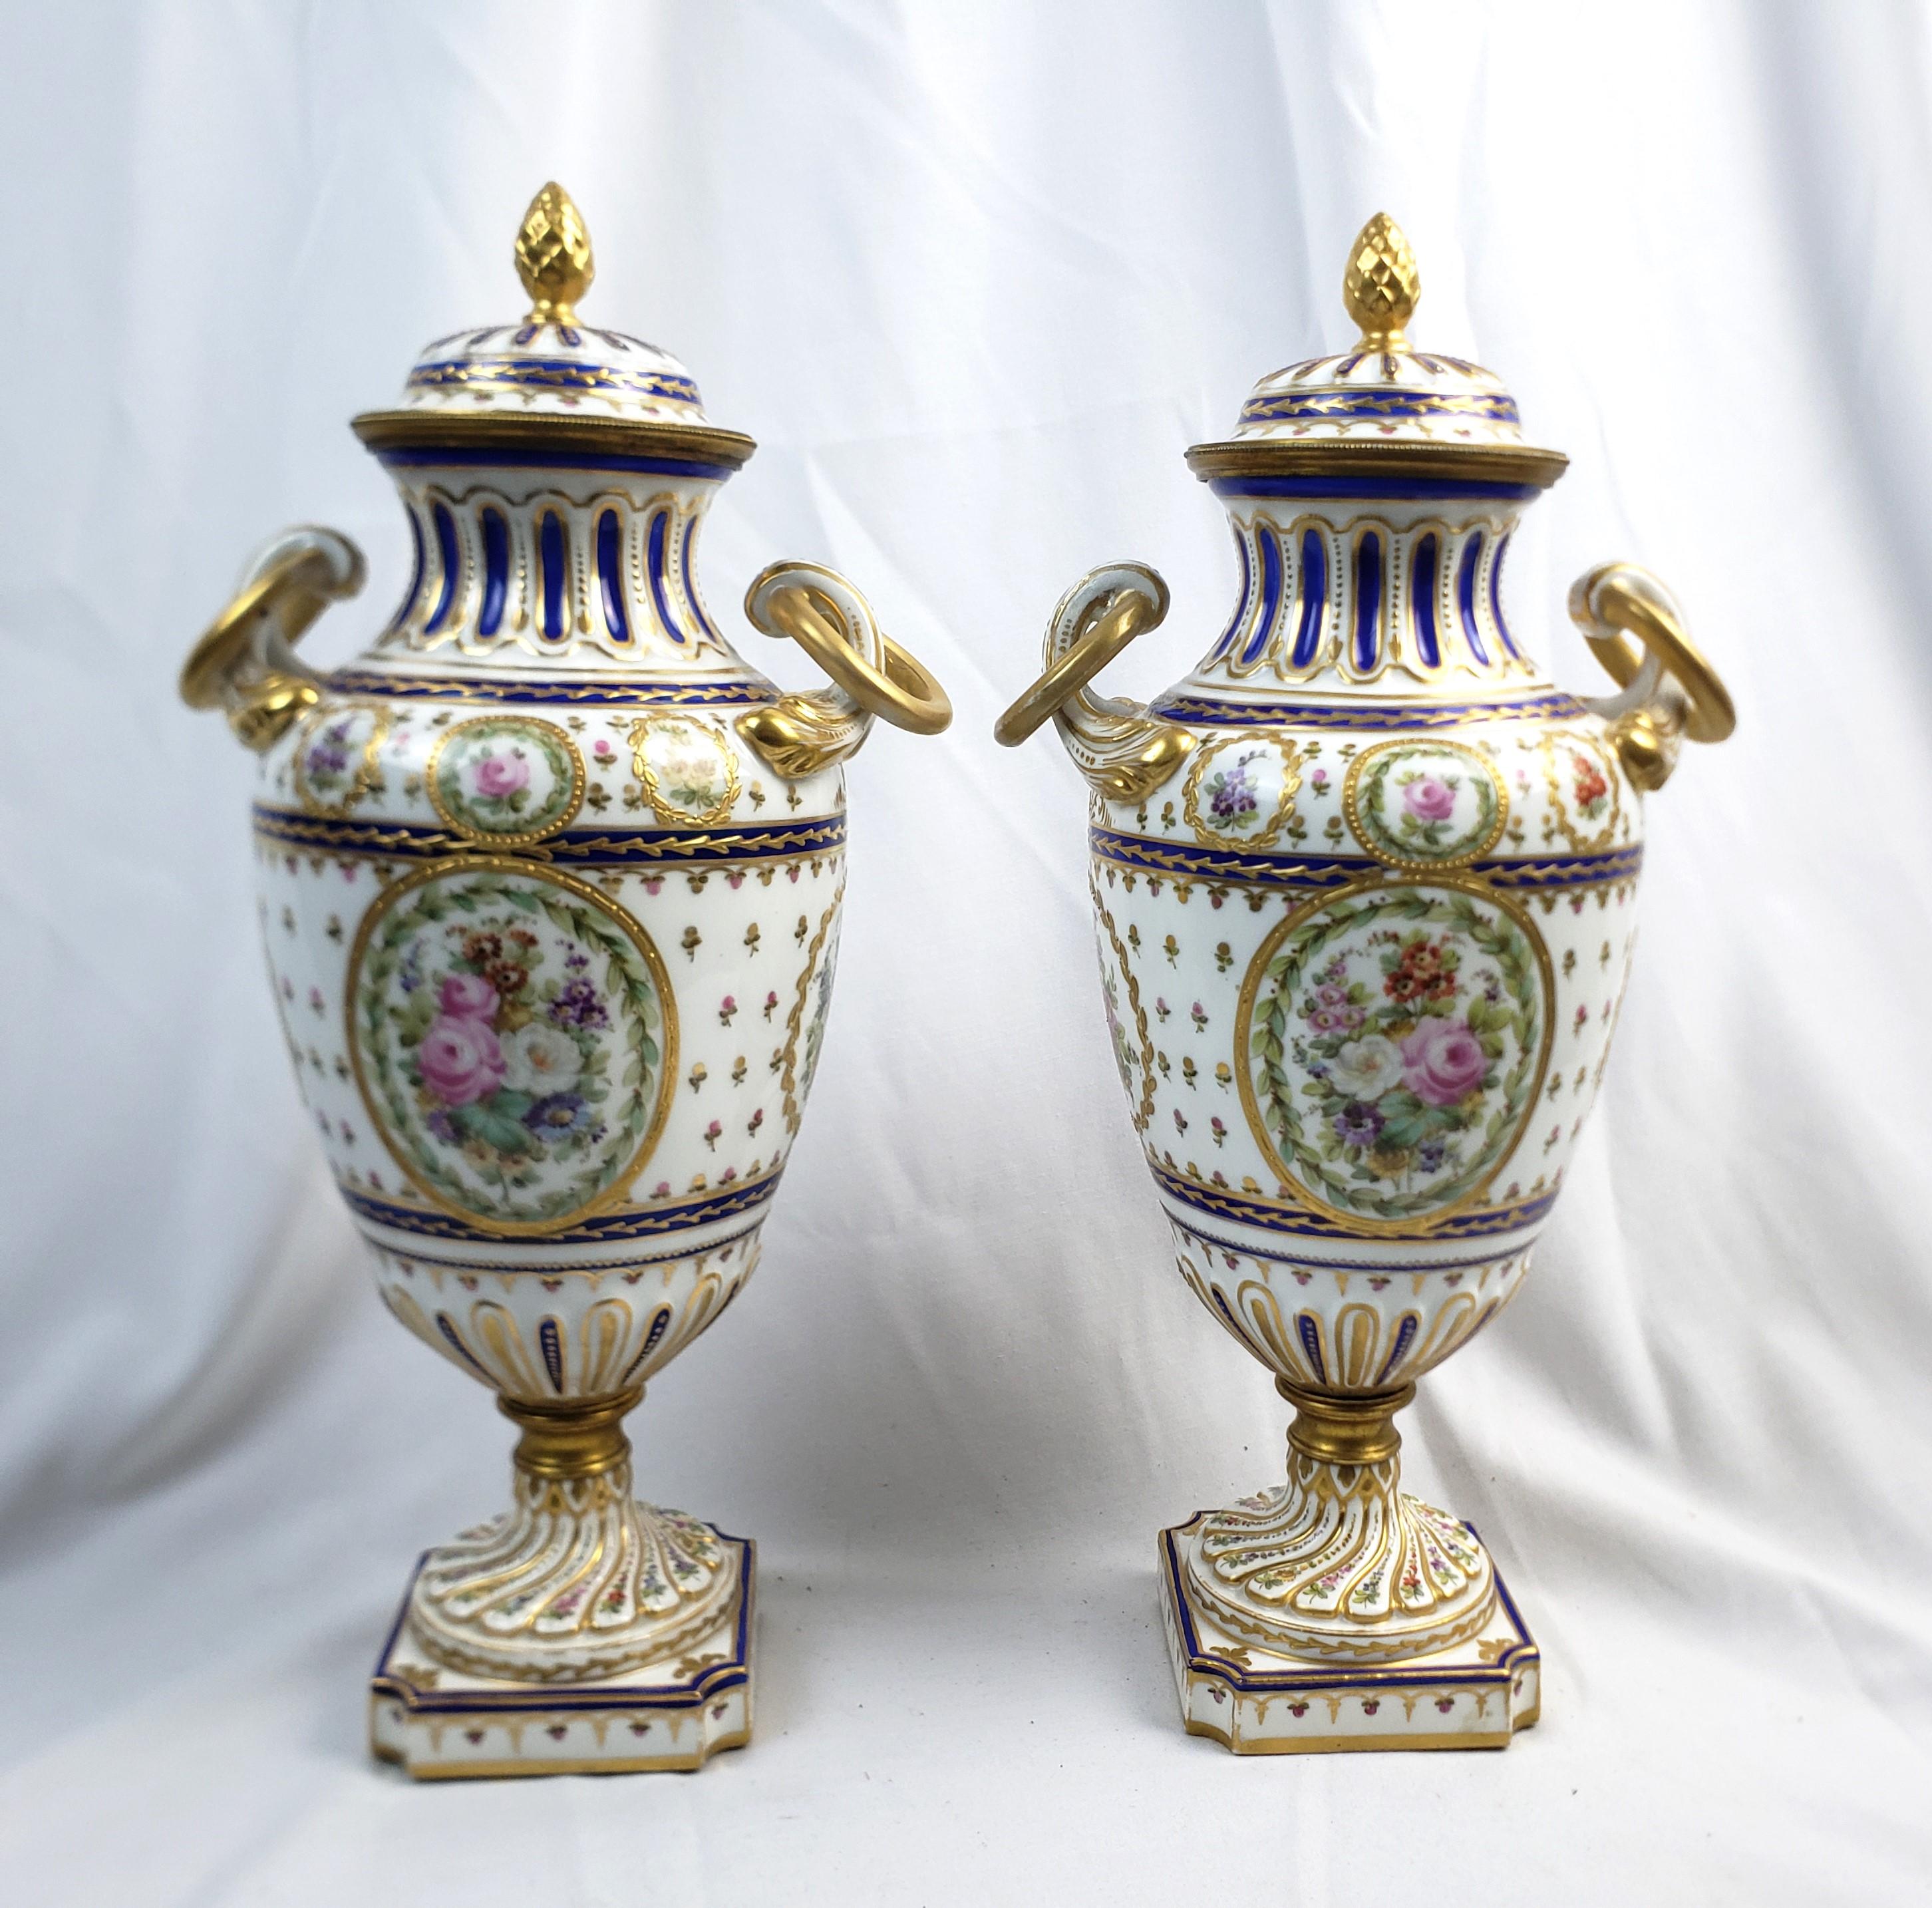 Dieses Paar antiker überdachter Urnen ist von einem unbekannten Hersteller signiert und stammt vermutlich aus Frankreich. Es wurde um 1880 im Stil von Sèvres hergestellt. Die überdachten Urnen sind aus Porzellan mit weißen Rillen und kobaltblauen